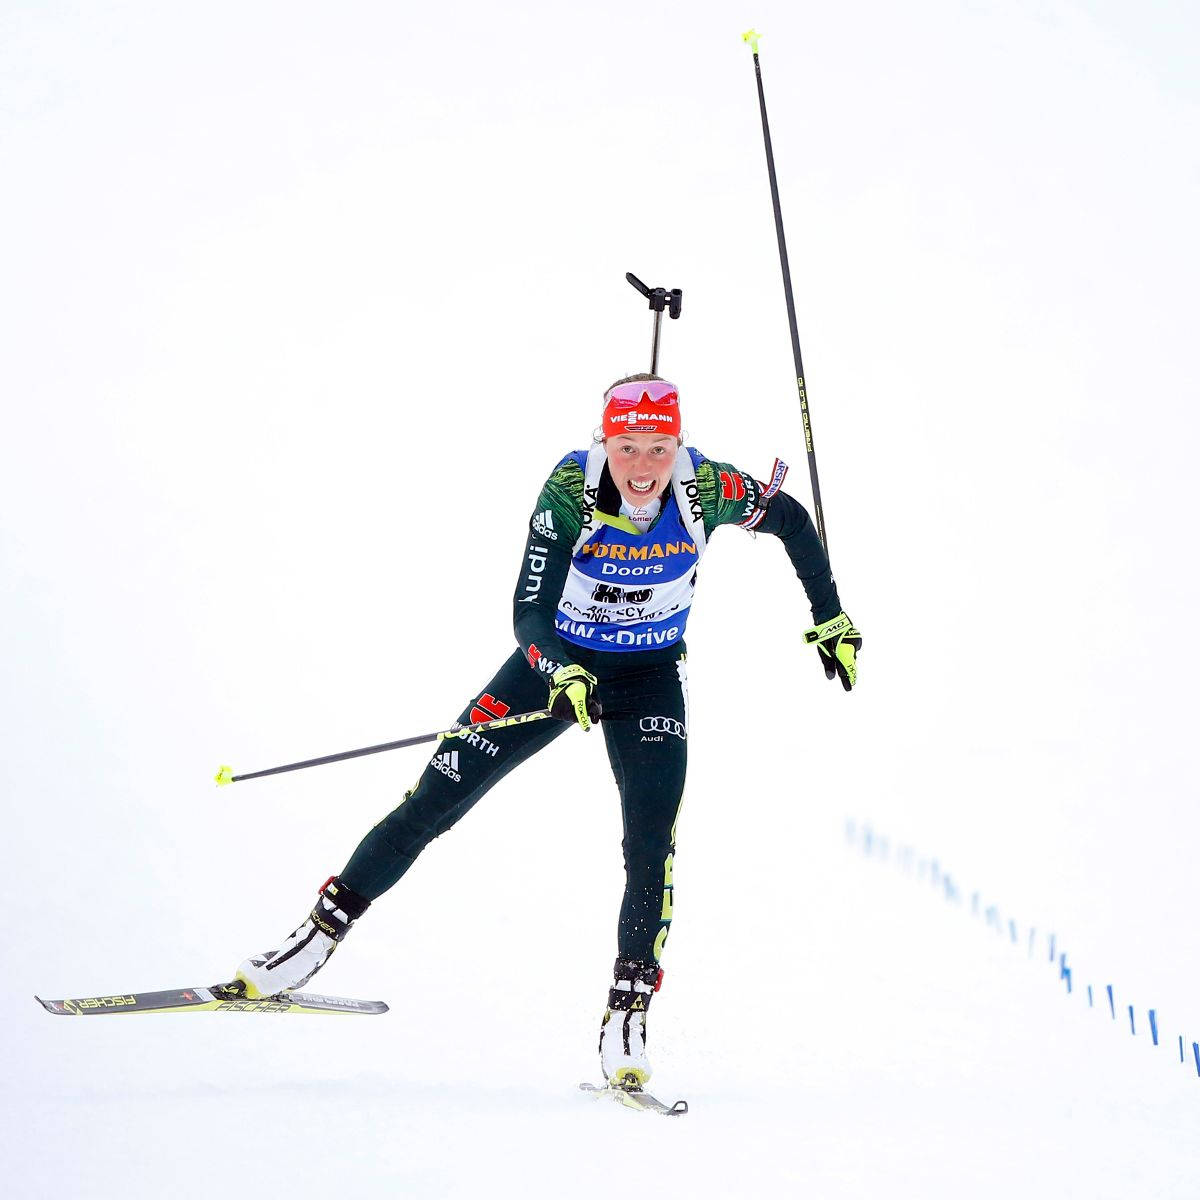 Atletafeminina De Biatlo Esquiando Em Velocidade Downhill. Papel de Parede